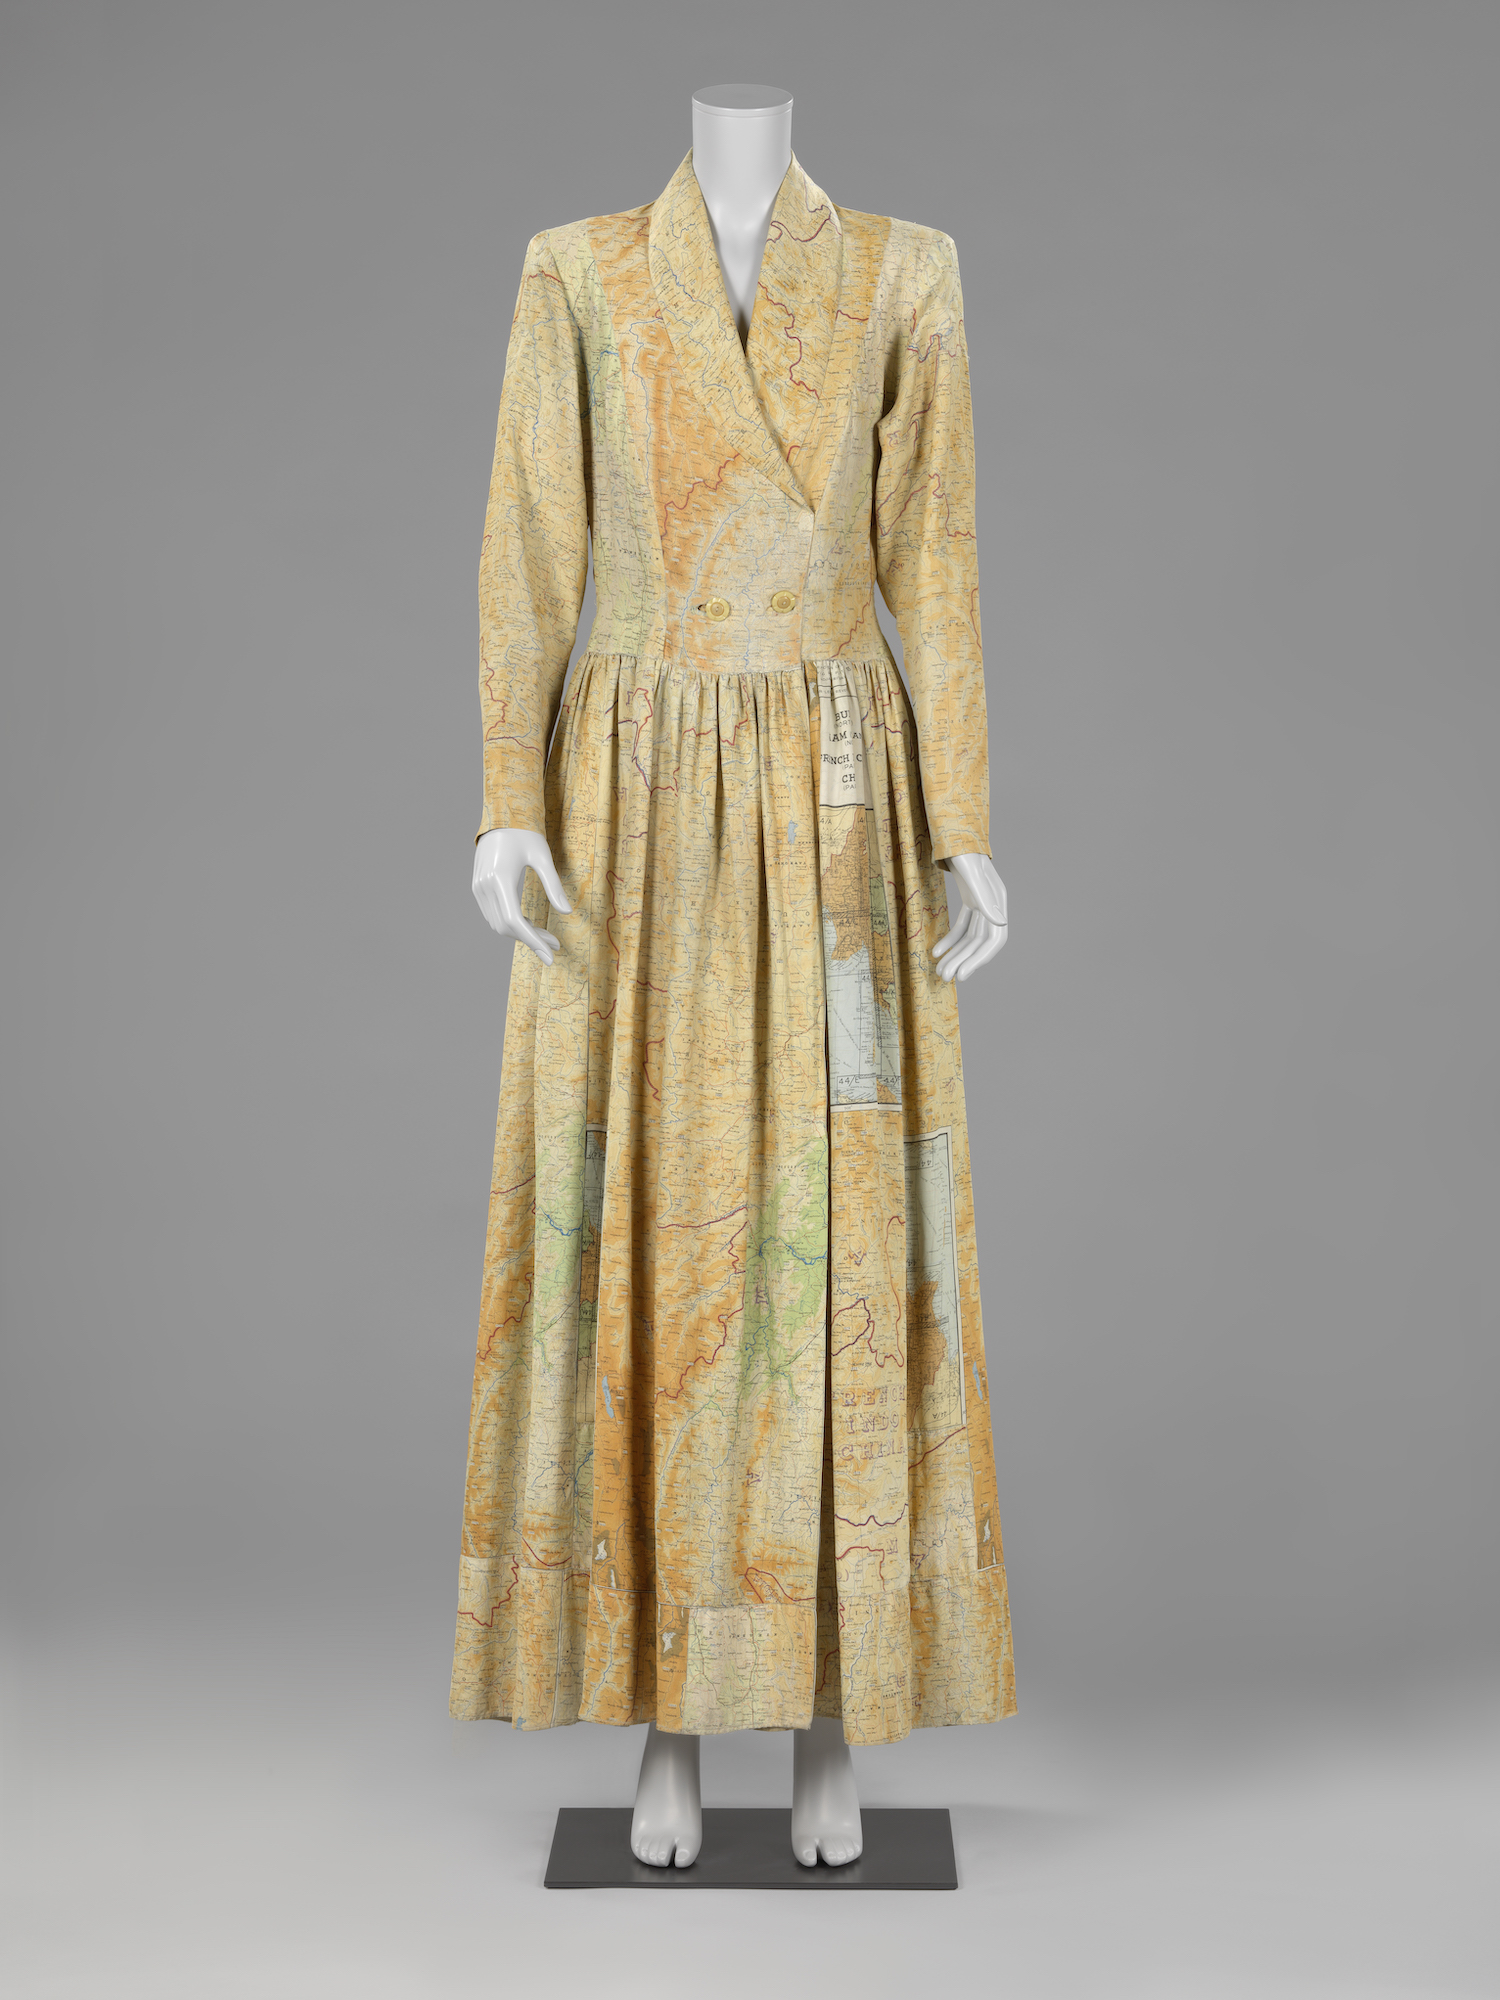 絲綢地圖製作的家居服 by Jeanne Terwen-de Loos - 1945 年 - 155 x 82 x 40 cm 